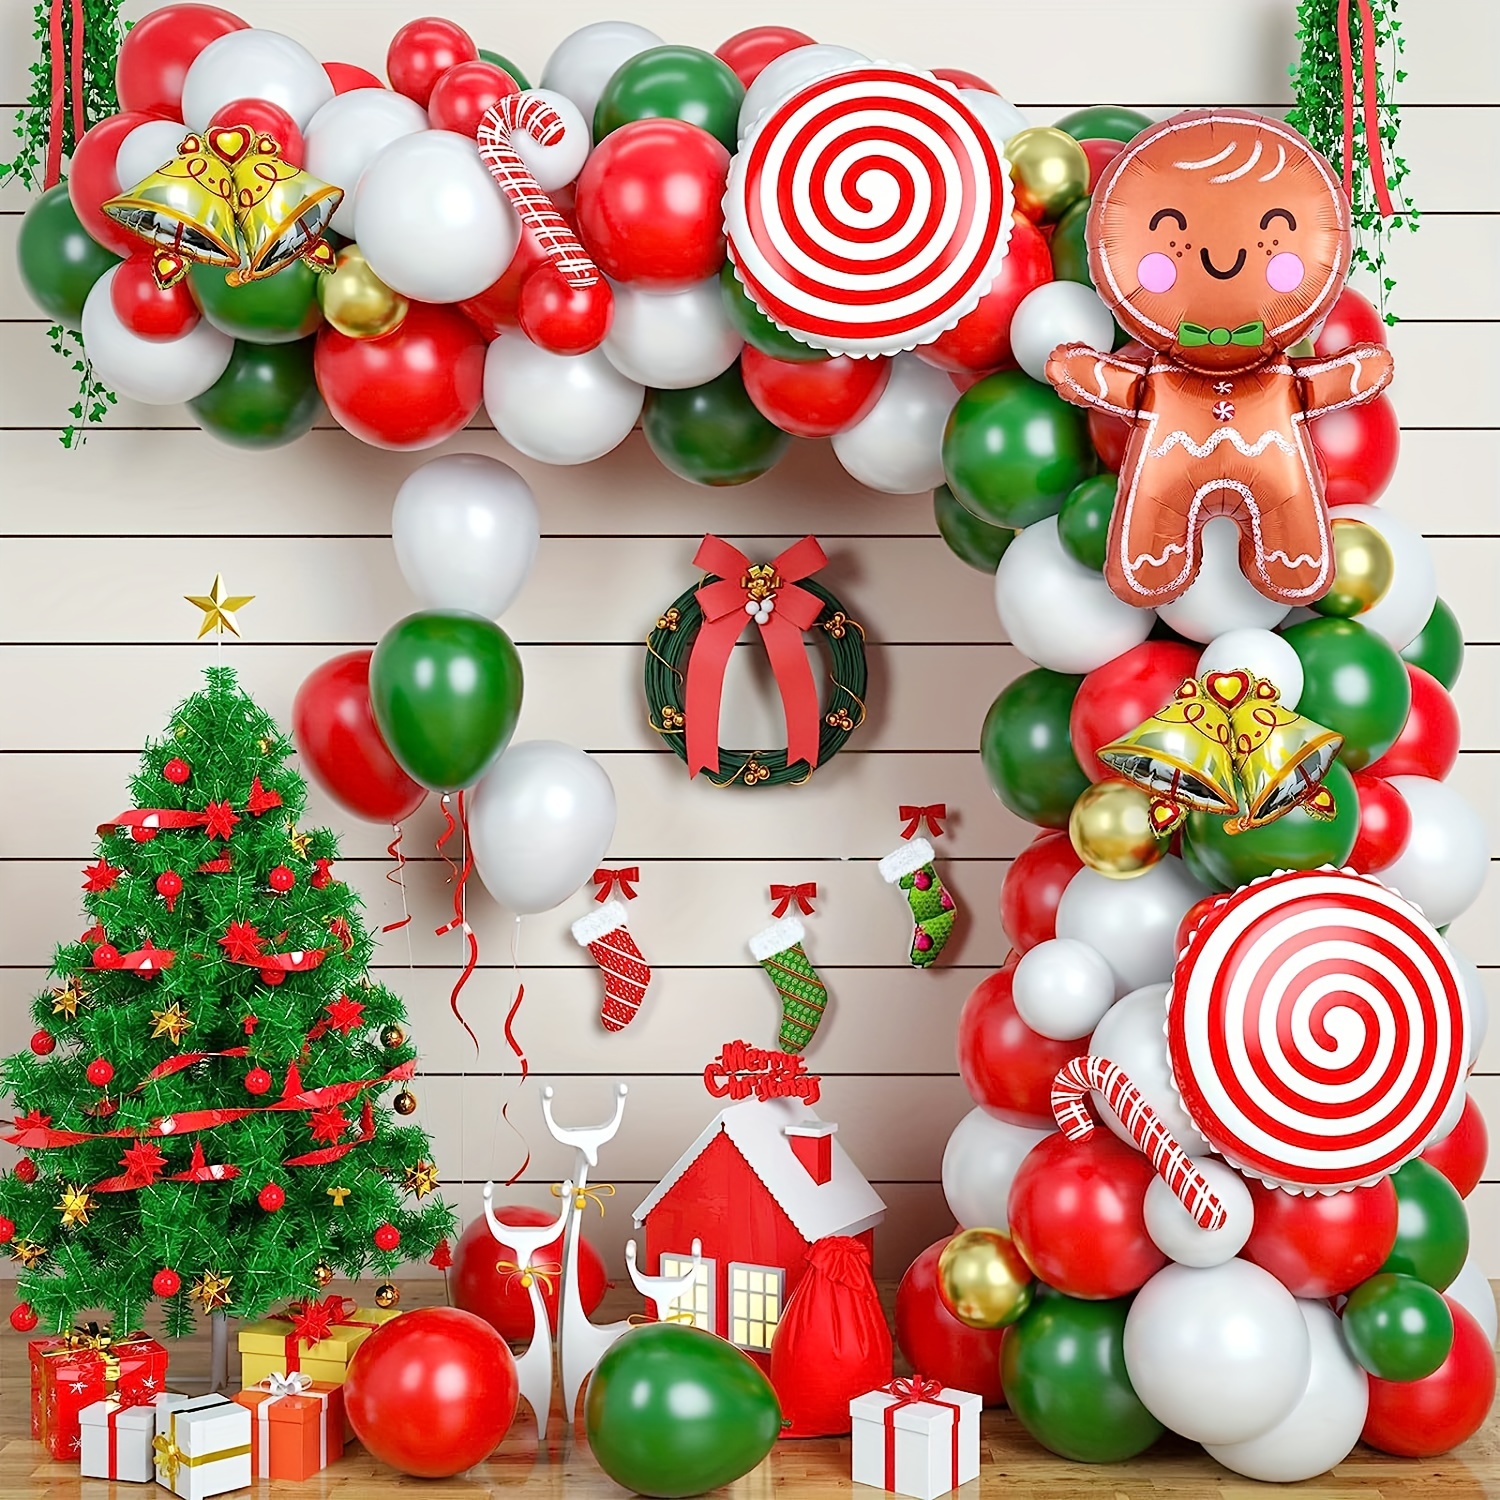 Arche en ballons, Noël . Christmas balloons arch